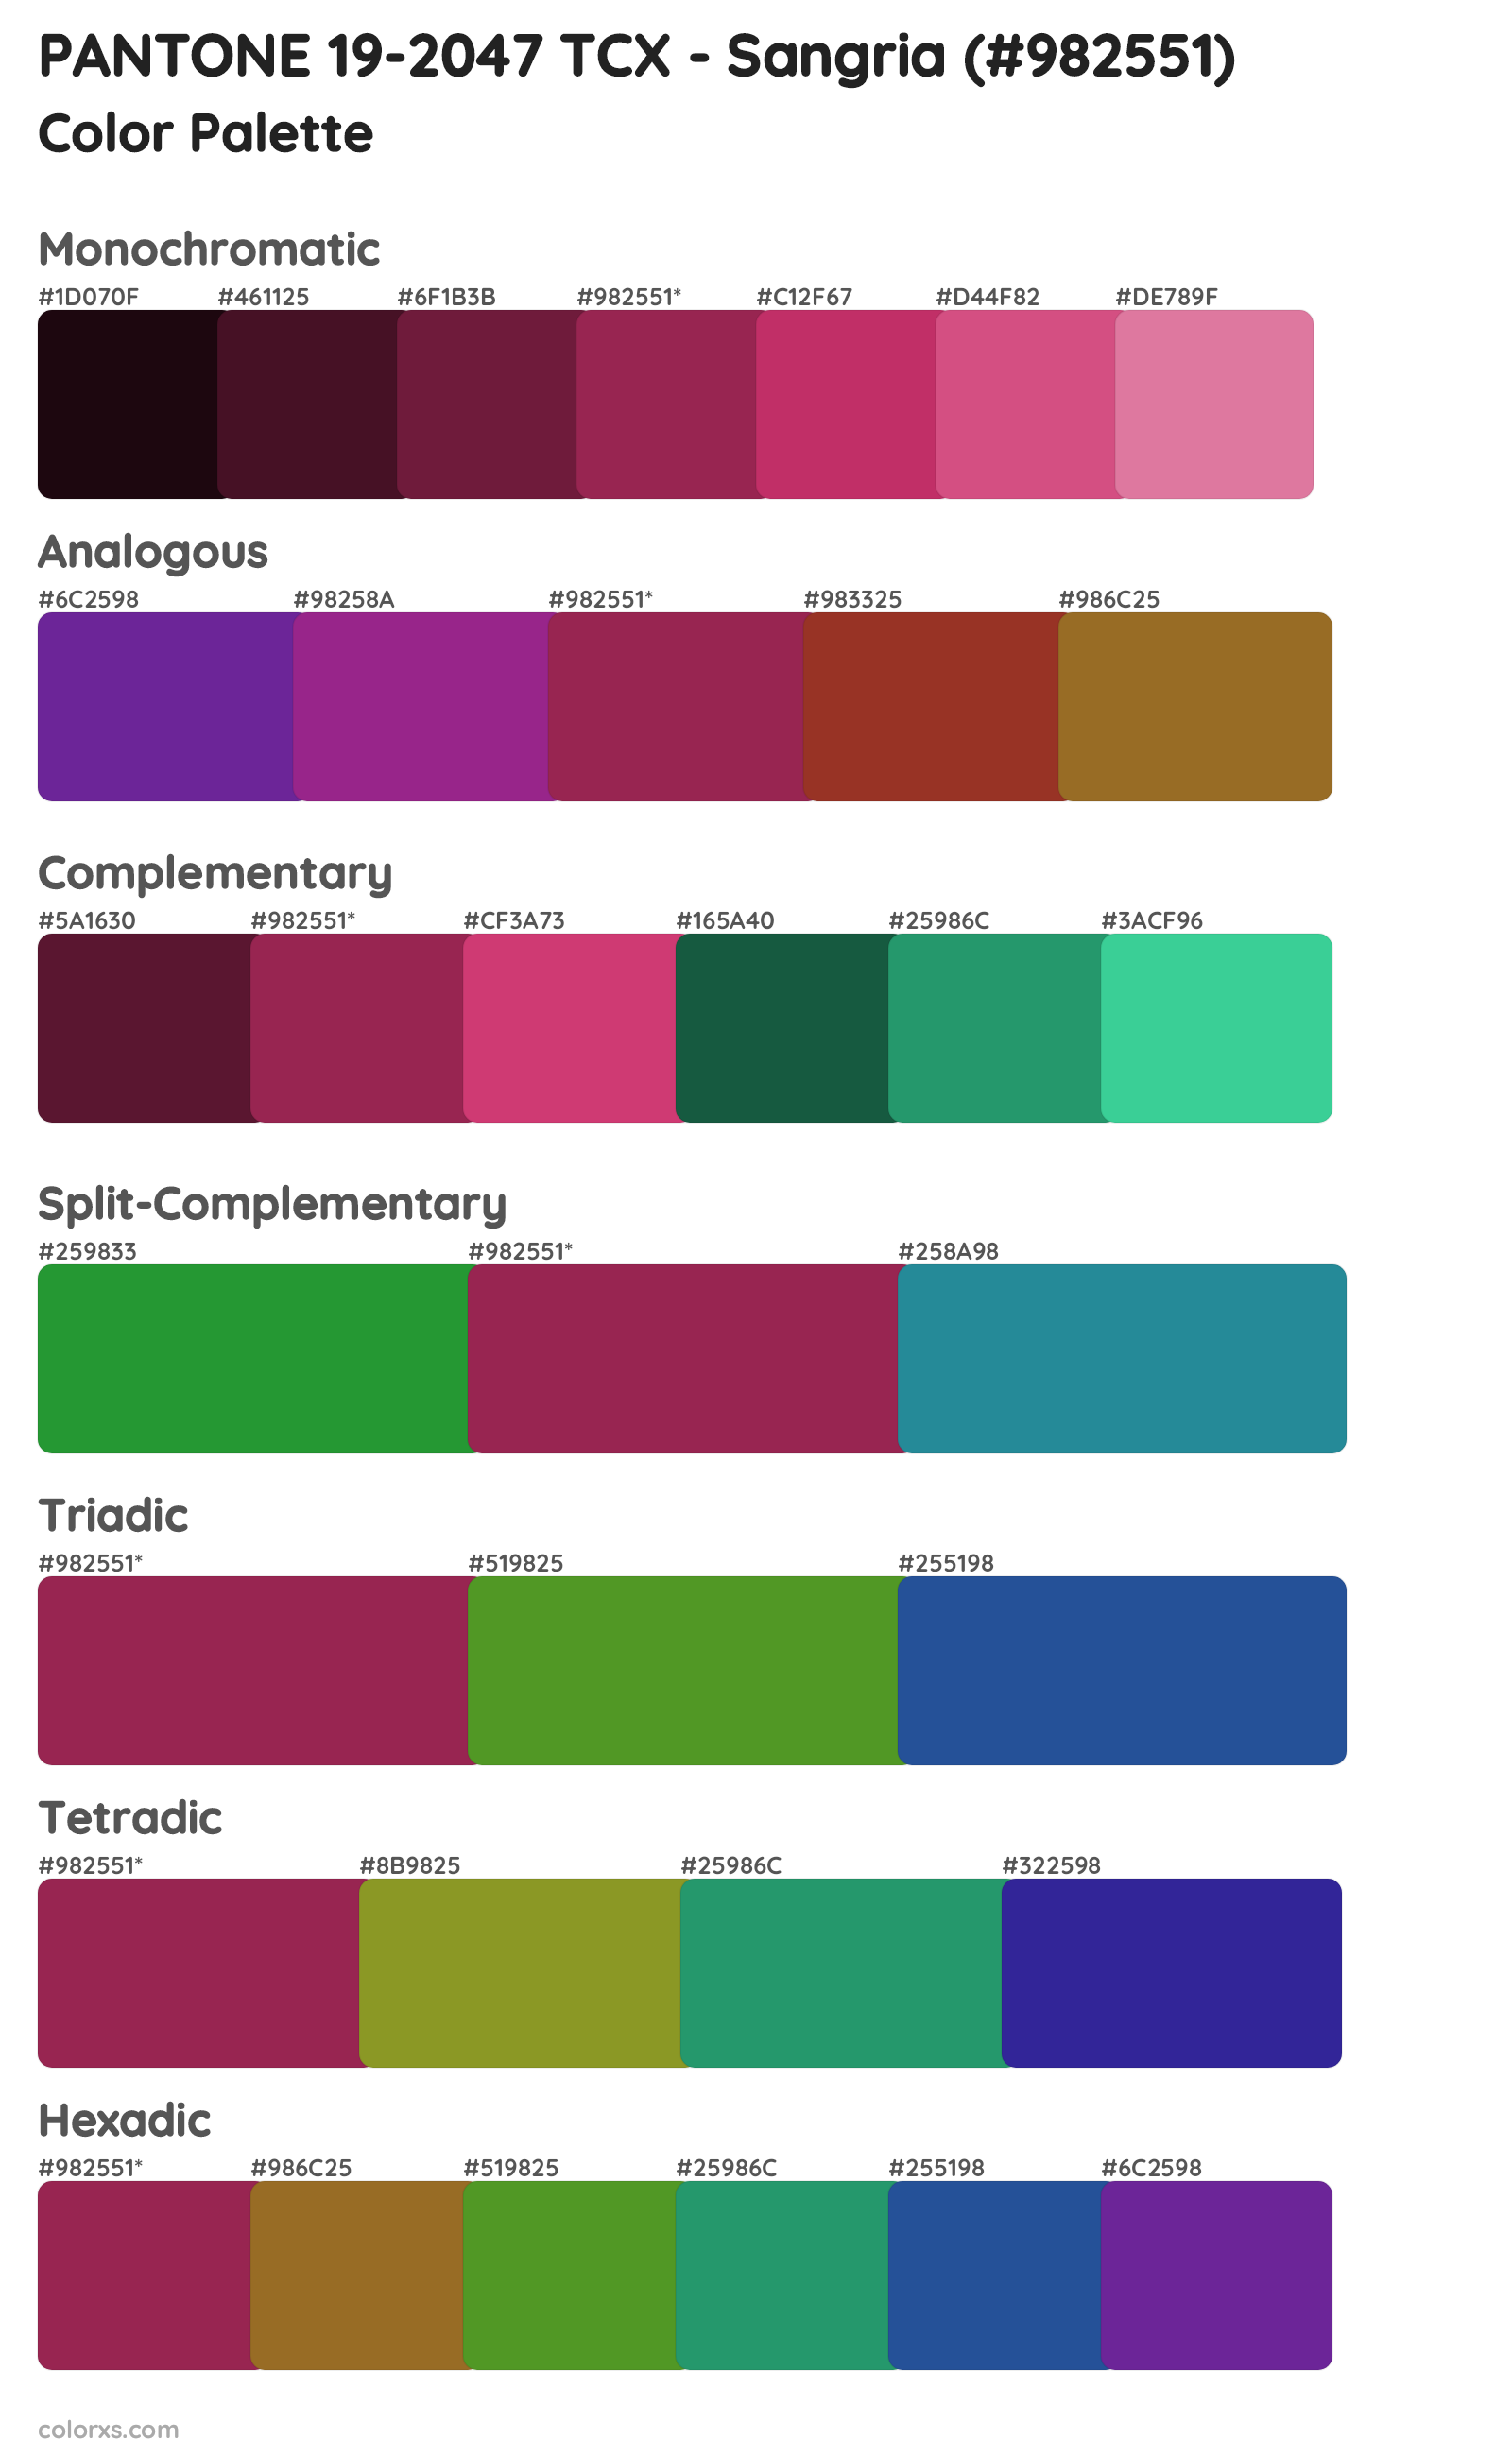 PANTONE 19-2047 TCX - Sangria Color Scheme Palettes